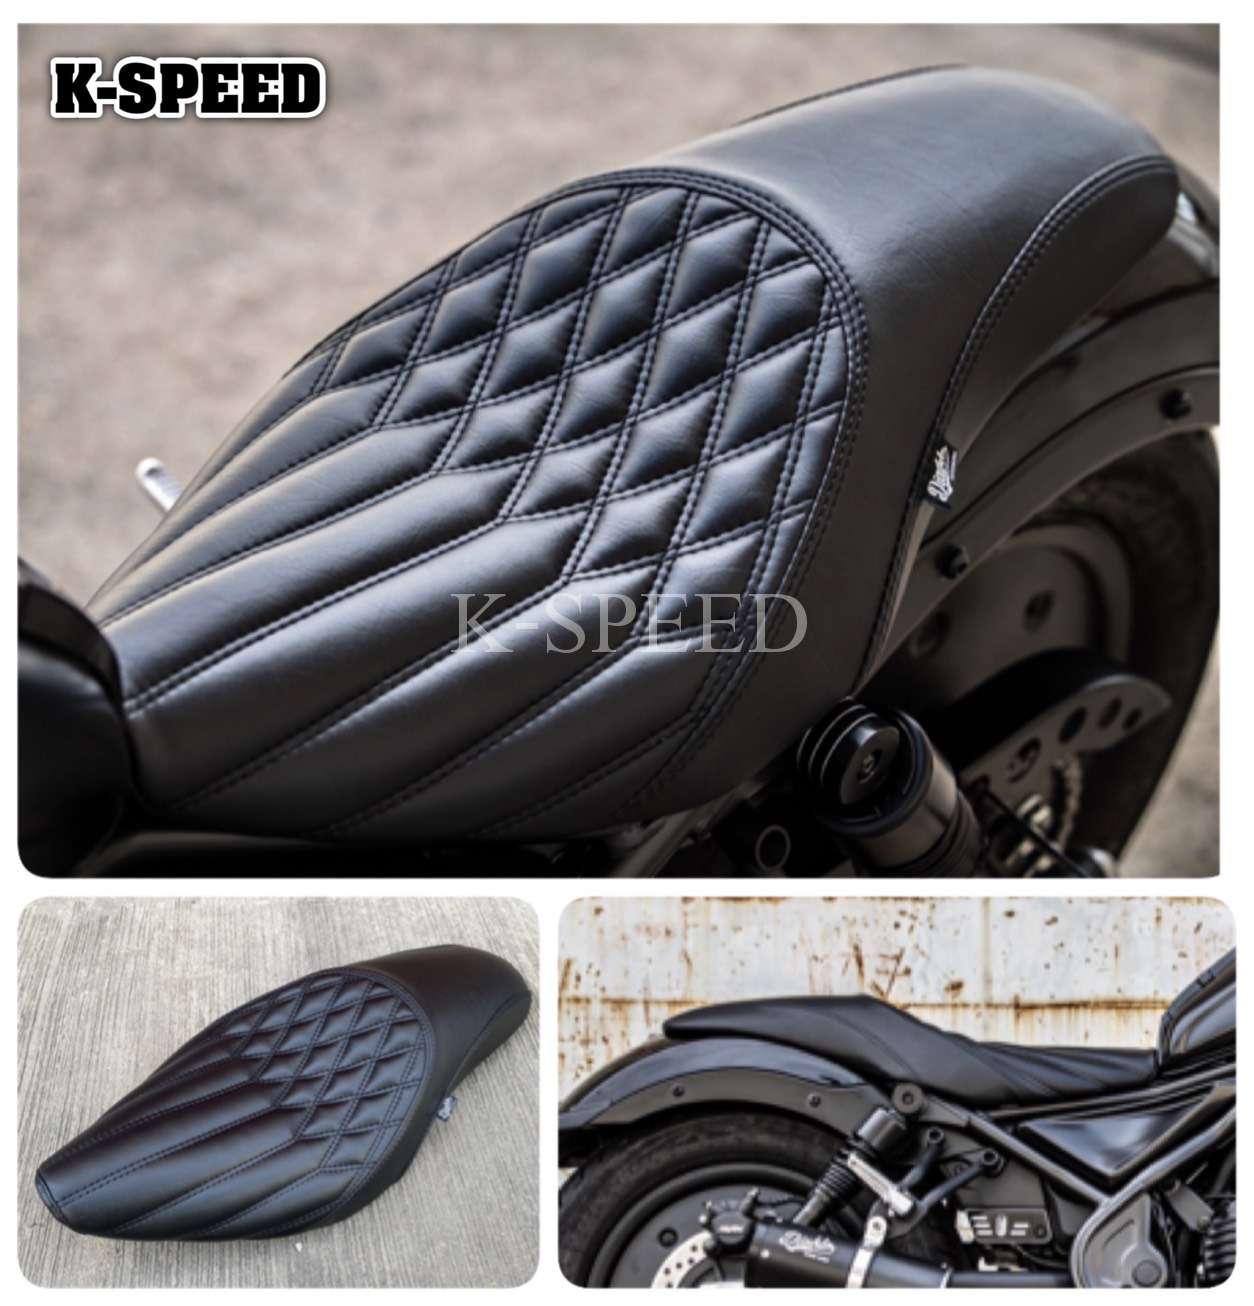 K-SPEED-RB0130 Seat Rebel250, 300 & 500: Rebel Black Armor – K 